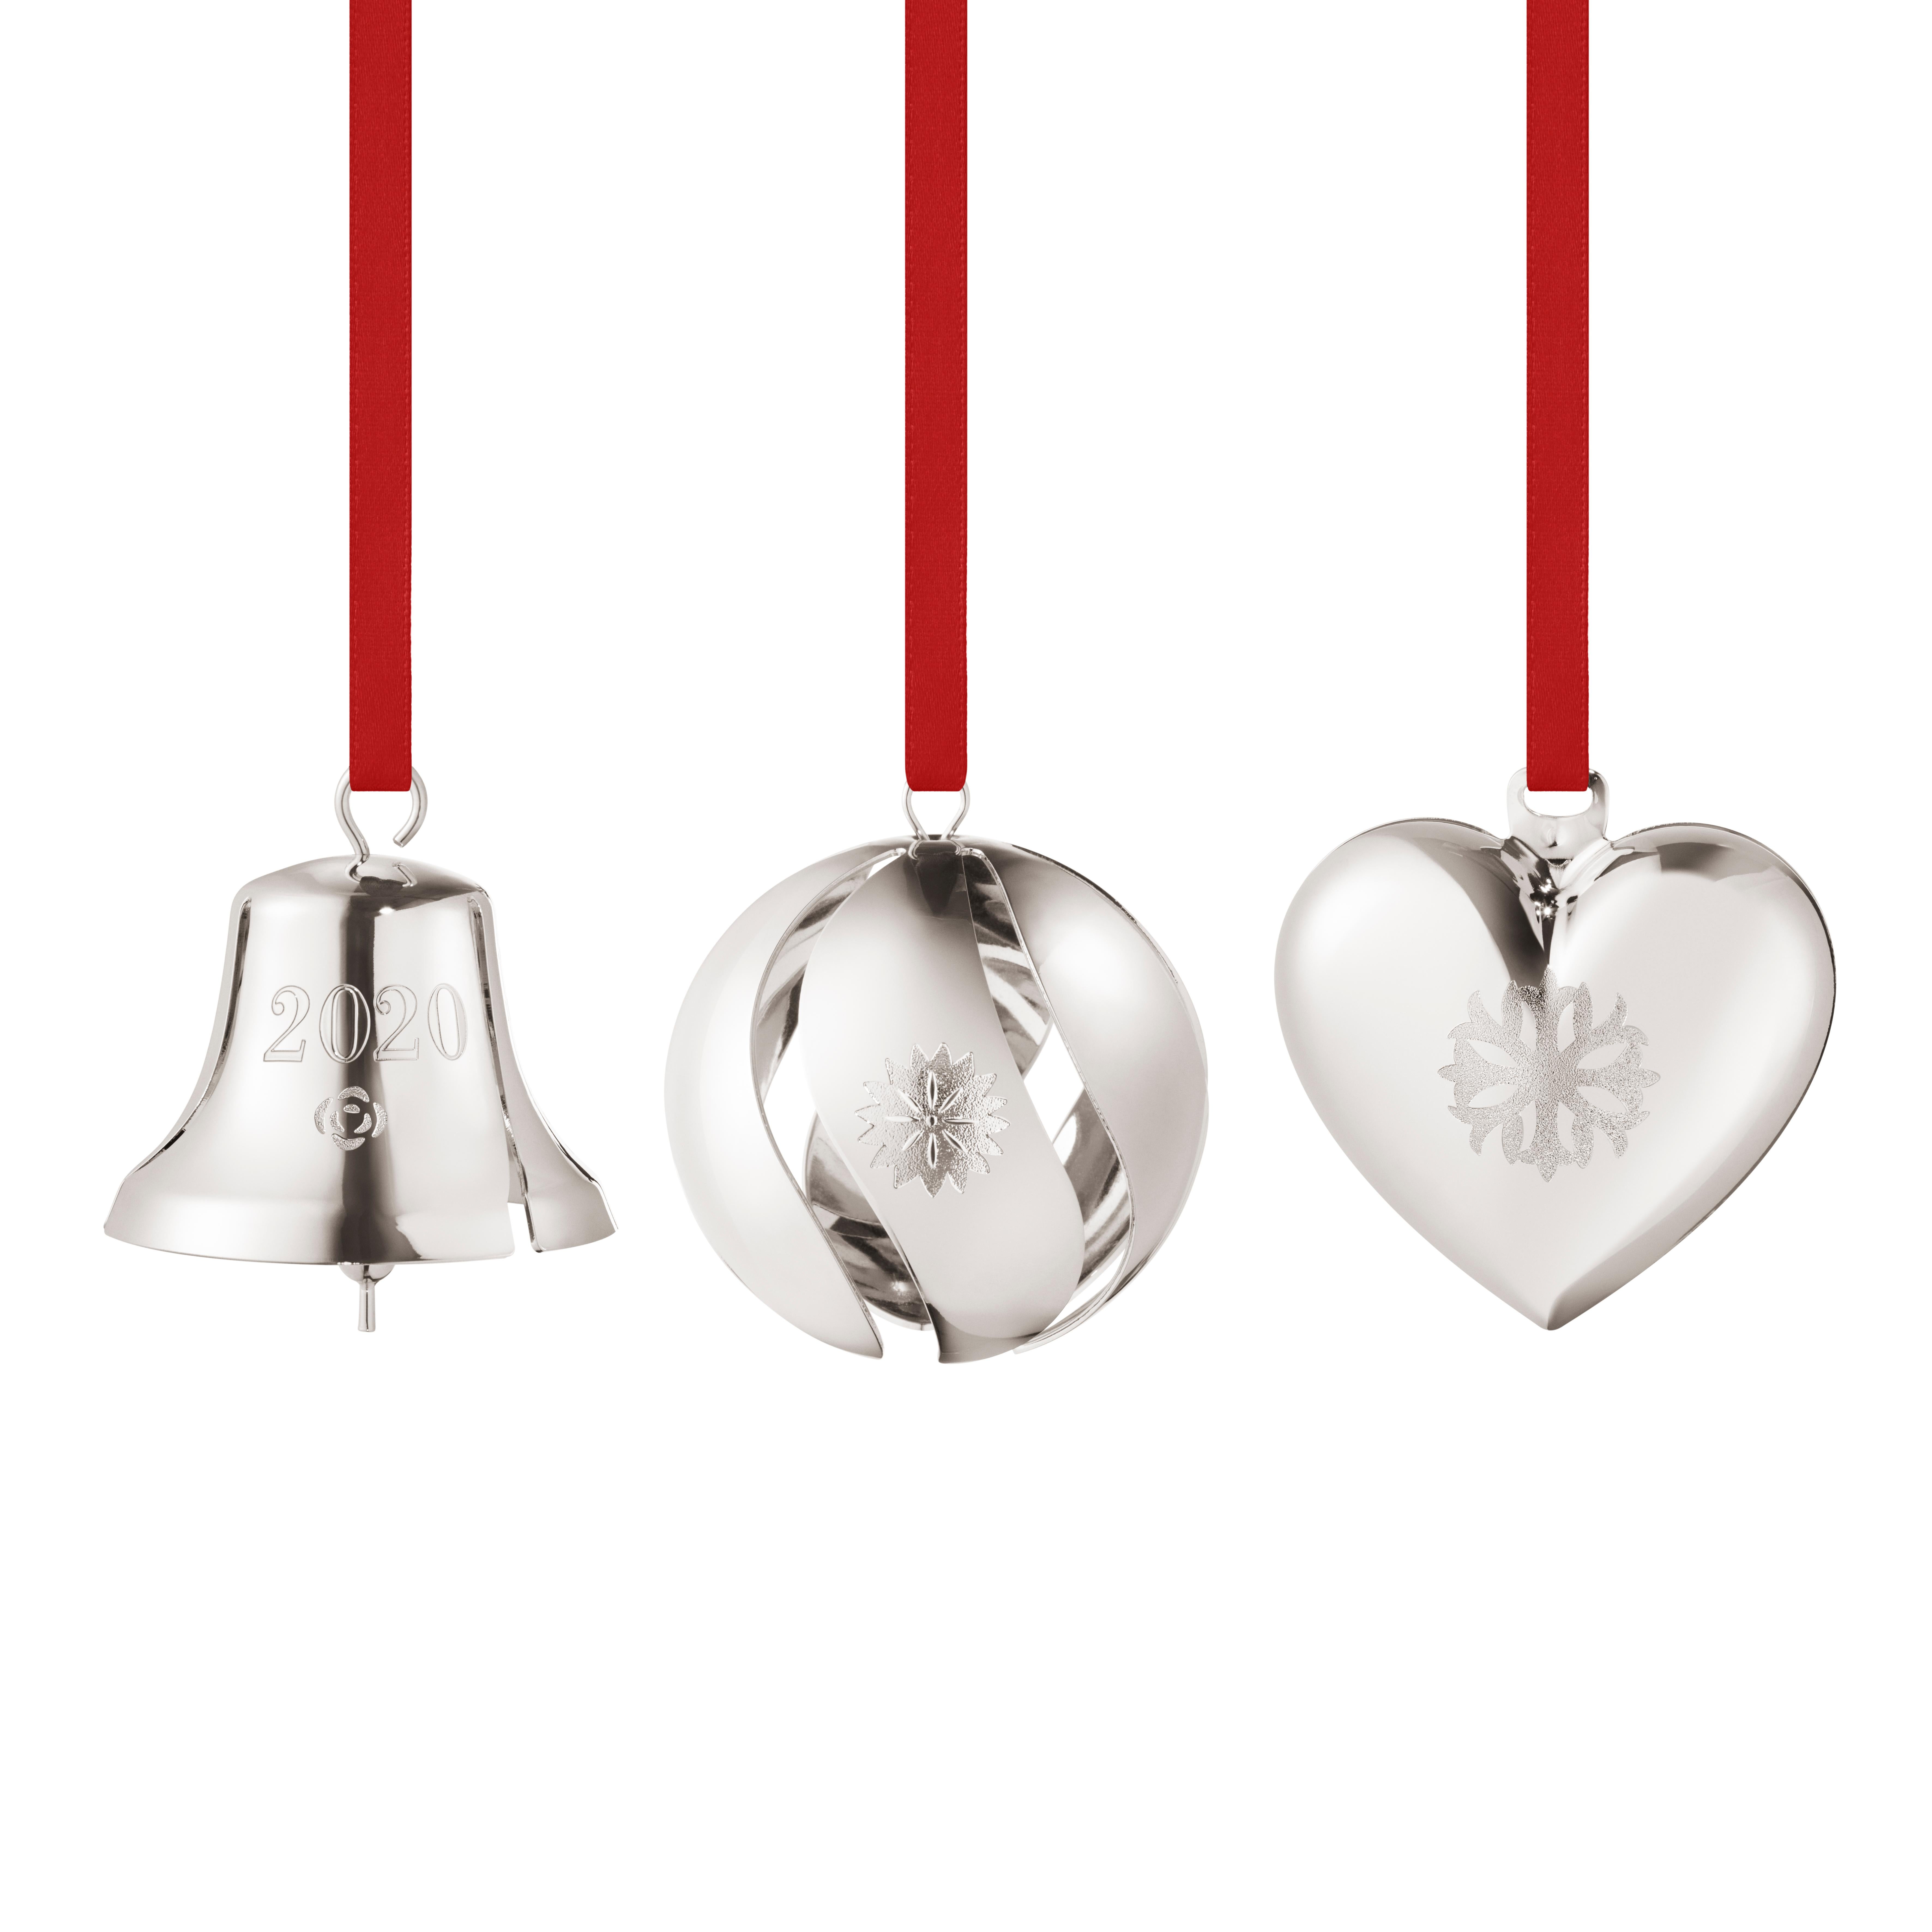 2020 Collectibles Gift Set, 3 pc, bell, ball, heart, Palladium plated brass